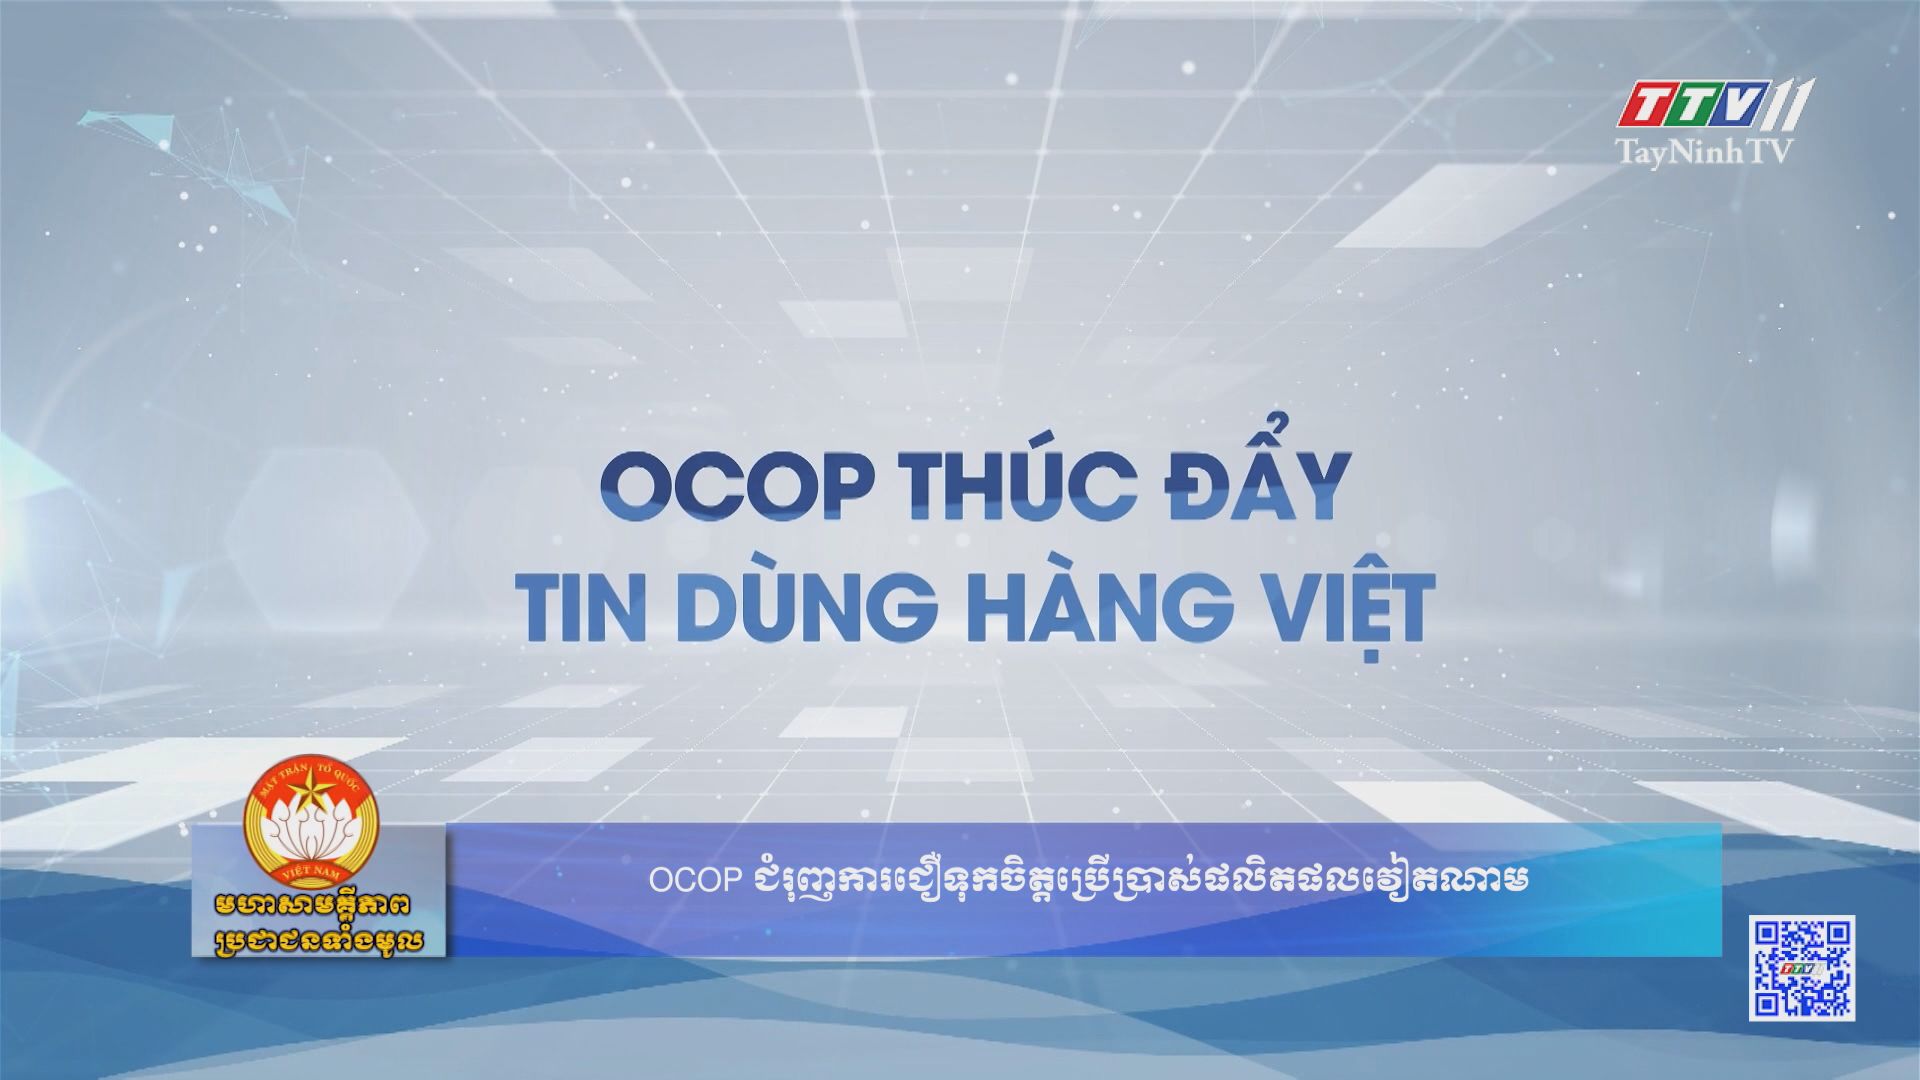 OCOP thúc đẩy tin dùng hàng Việt | ĐẠI ĐOÀN KẾT TOÀN DÂN | TayNinhTV